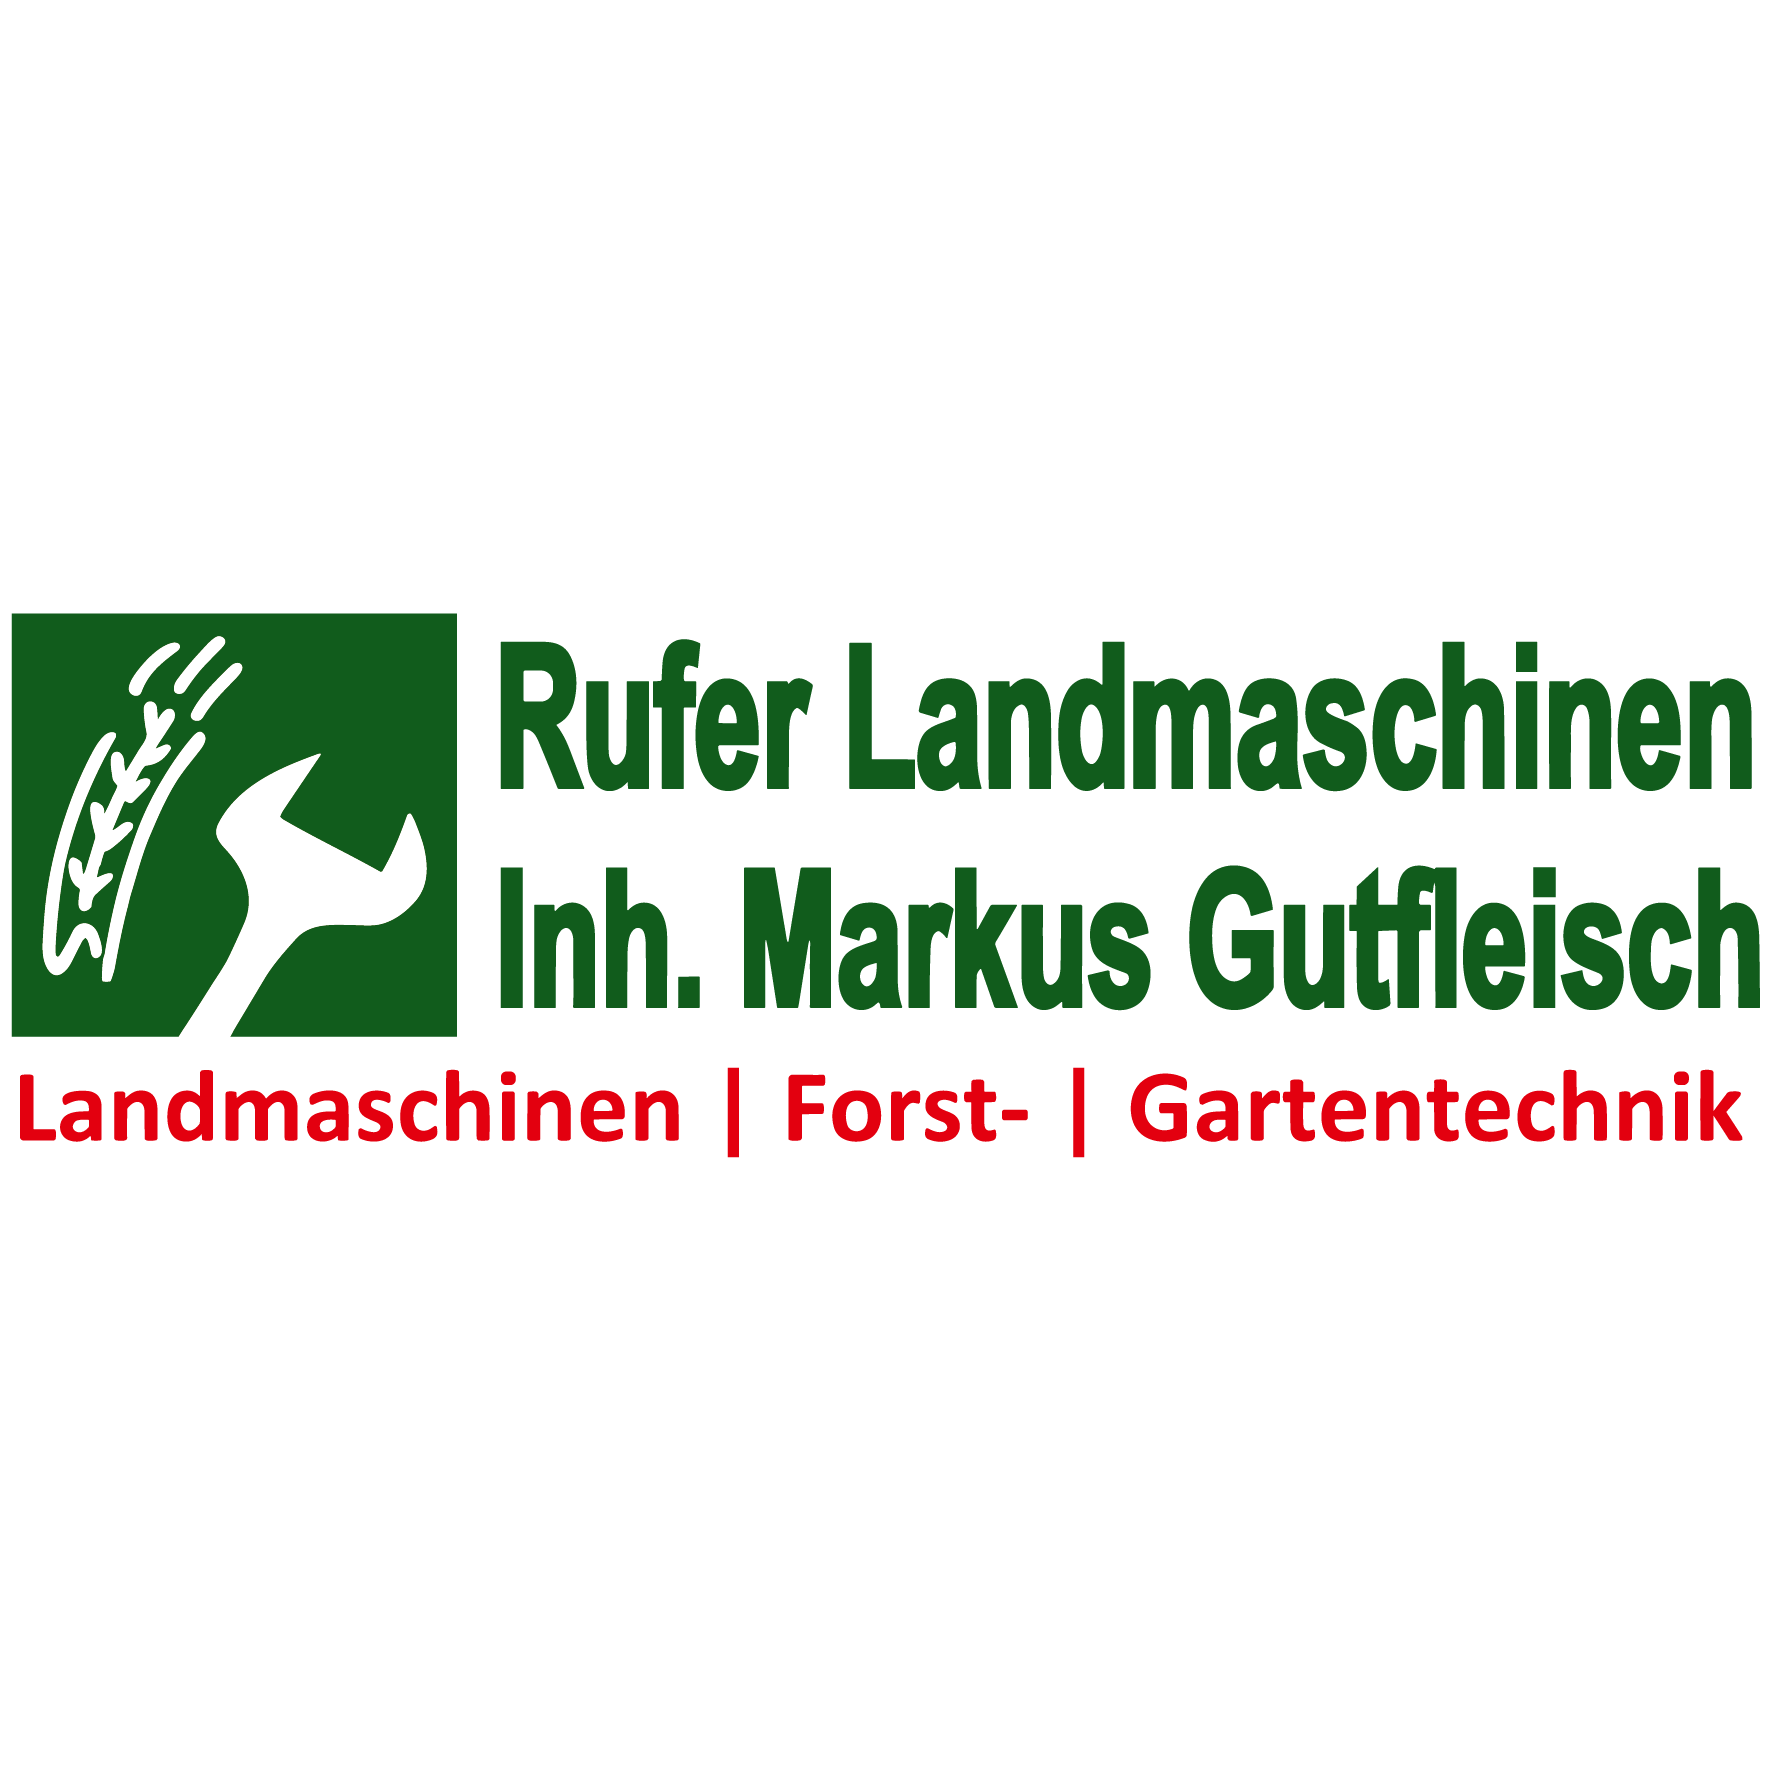 Rufer Landmaschinen, Inh. Markus Gutfleisch Logo